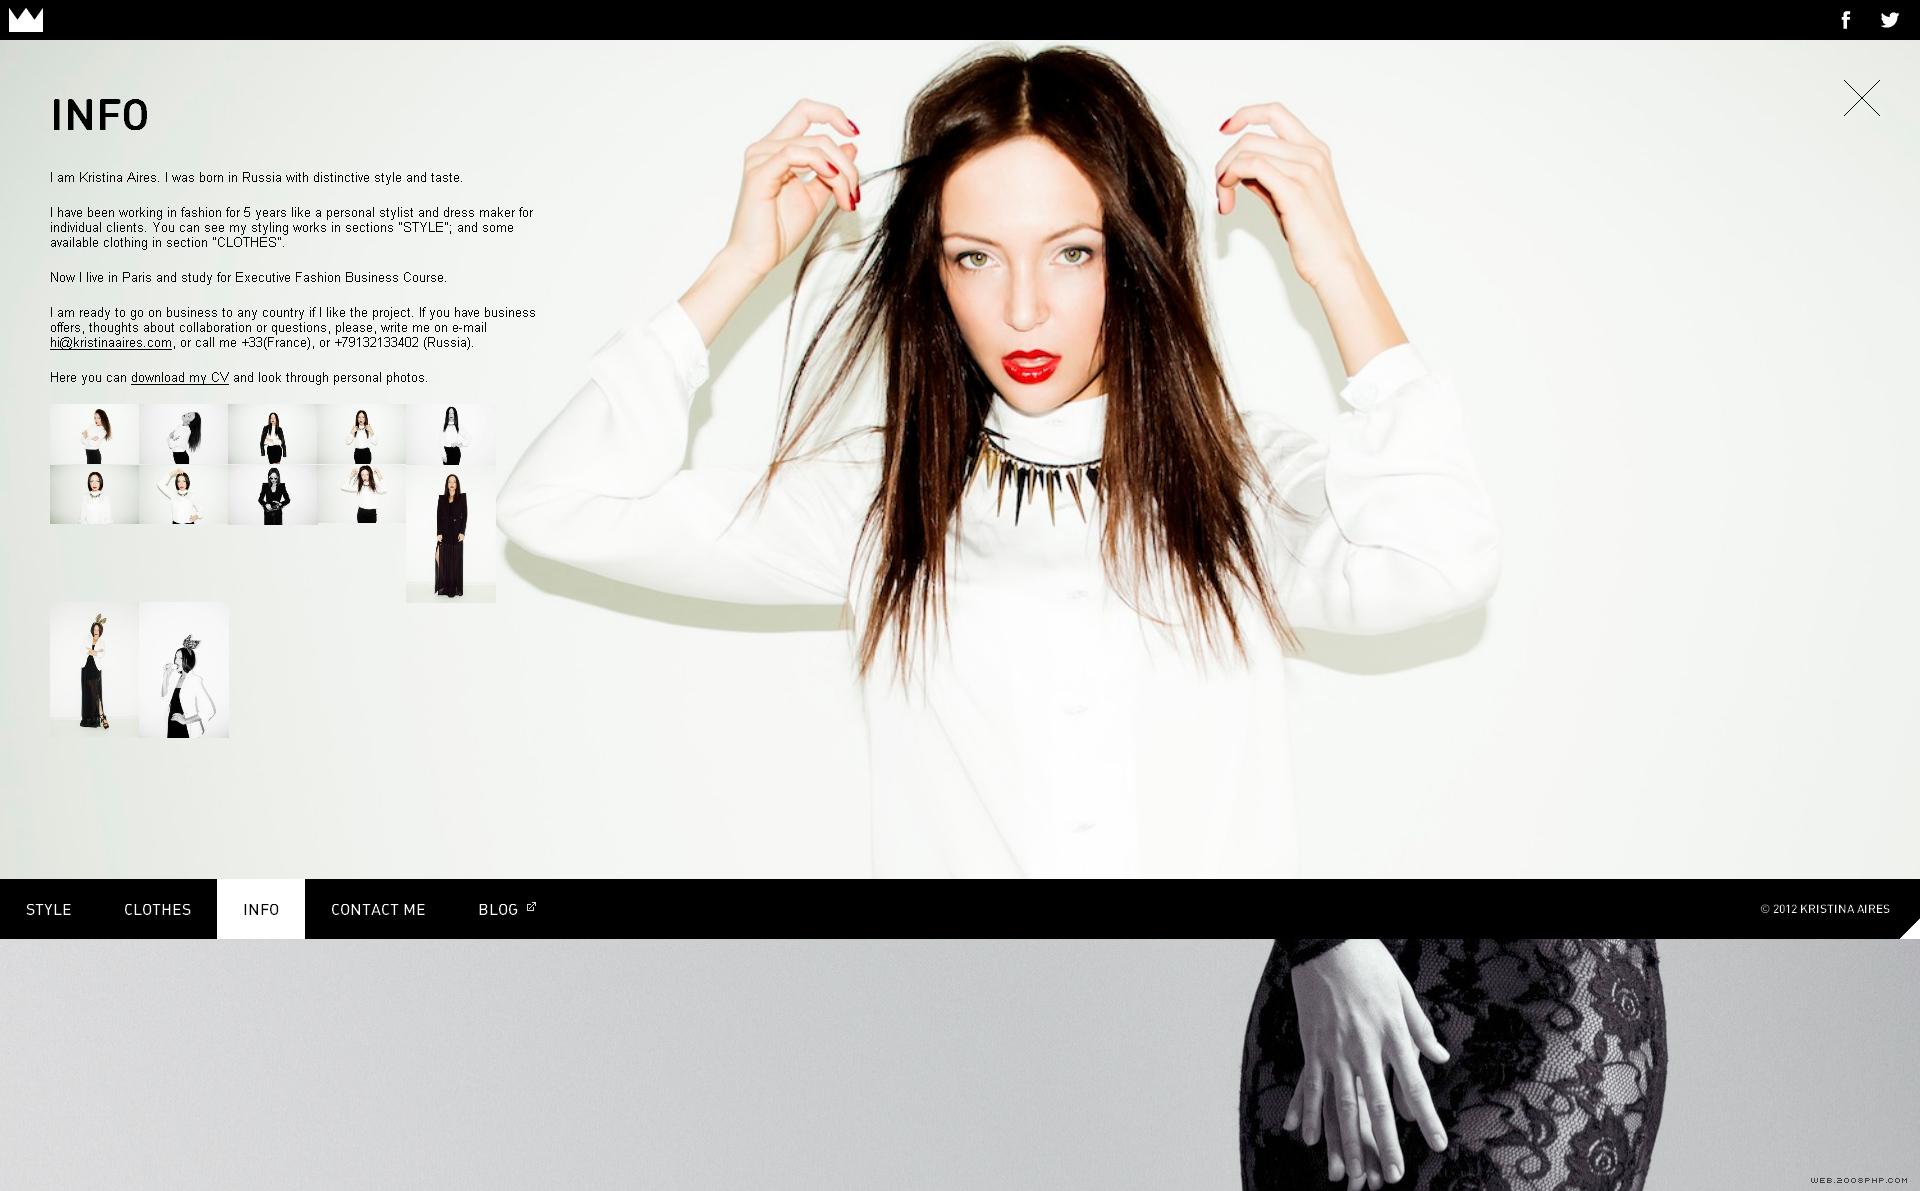 克里斯蒂娜时装服饰设计师个人网站。出生在俄